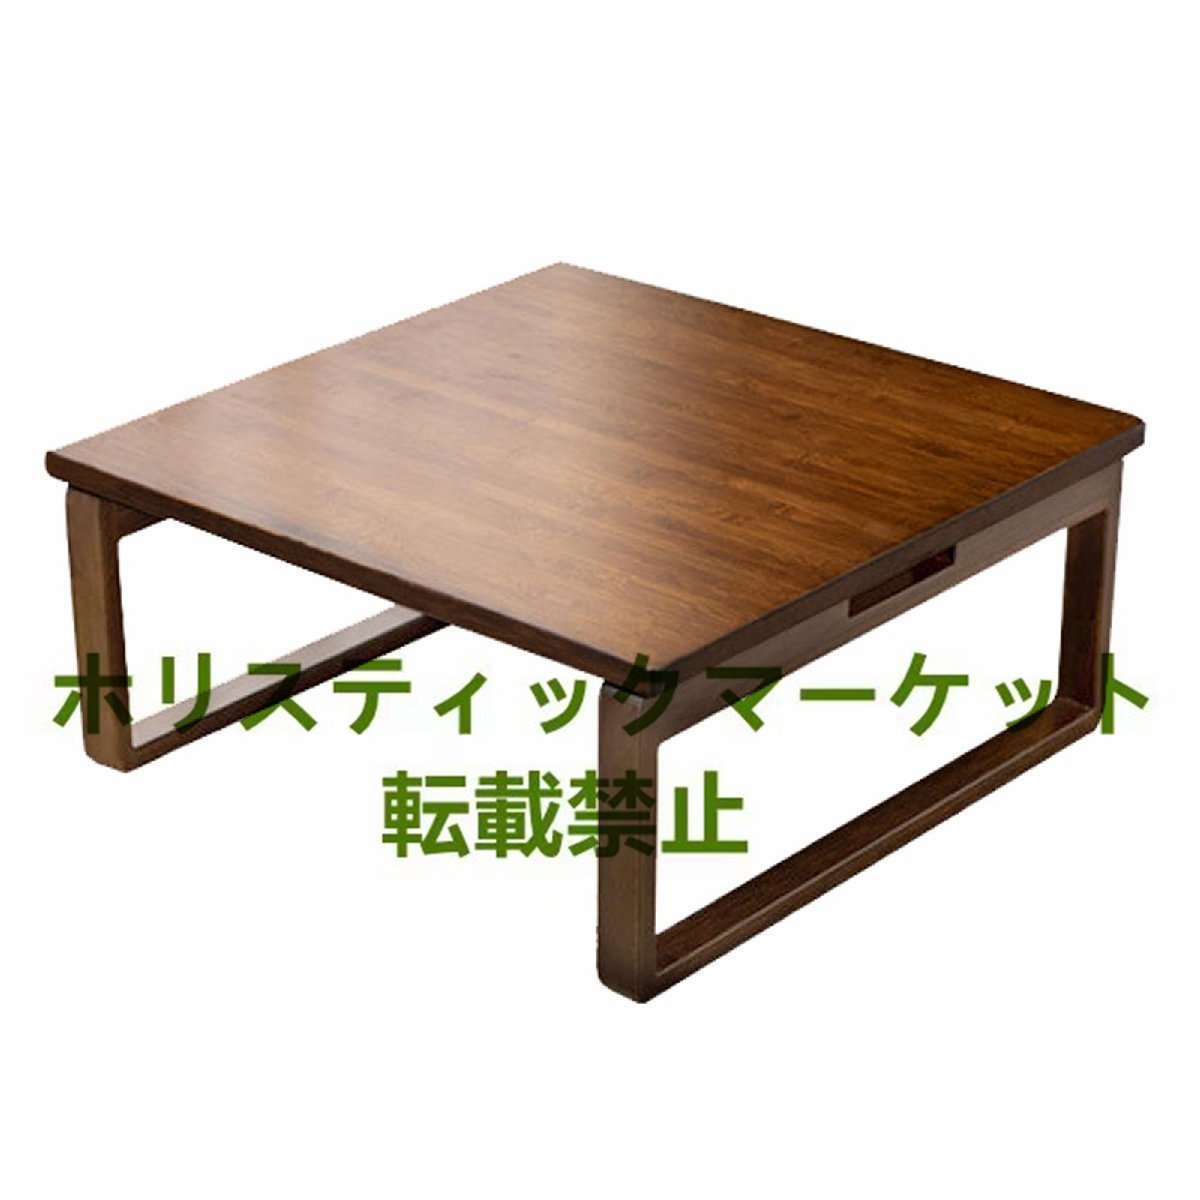 極上品 センターテーブル ローテーブル シンプルスタイル 折りたたみローテーブル バルコニーコーヒーテーブル 80*80cm B